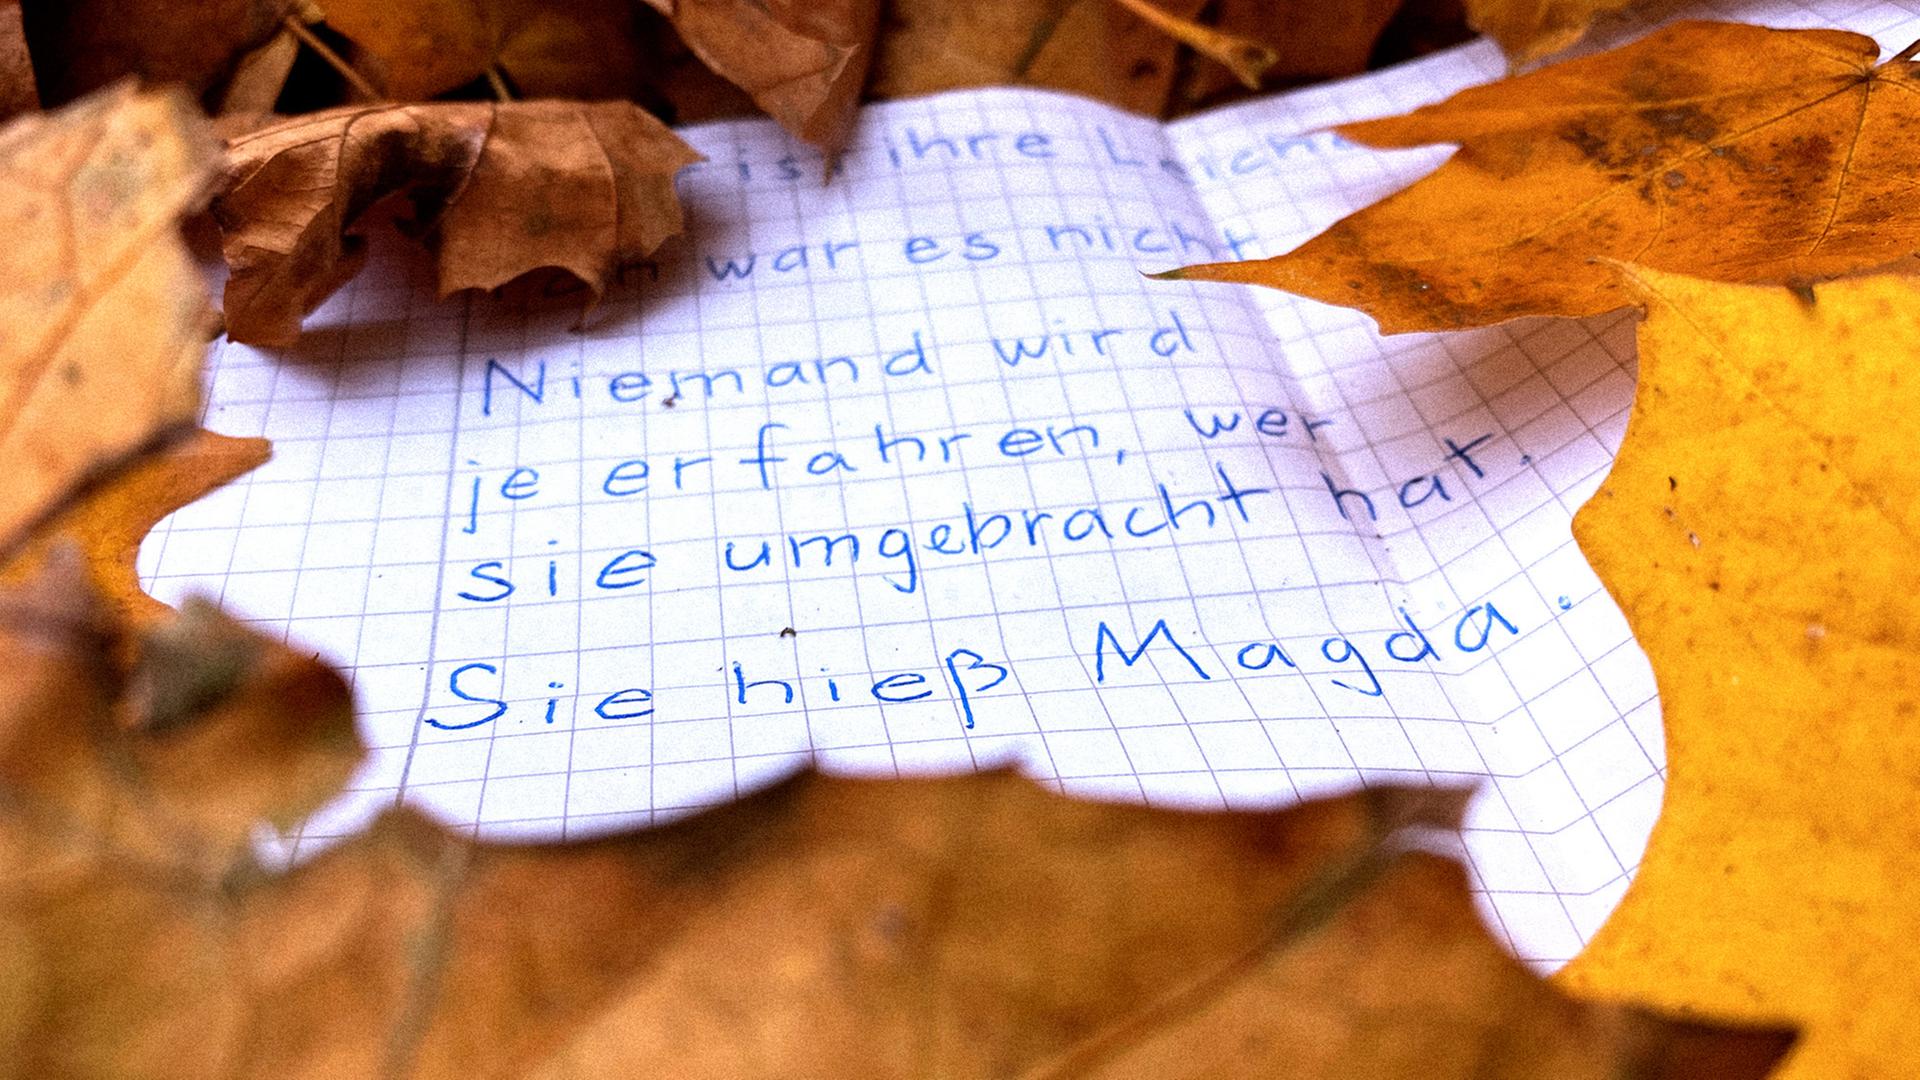 Ein beschrifteter Zettel liegt im Herbstlaub. Darauf ist zu lesen: "Niemand wird es je erfahren, wer sie umgebracht hat. Sie hieß Magda."